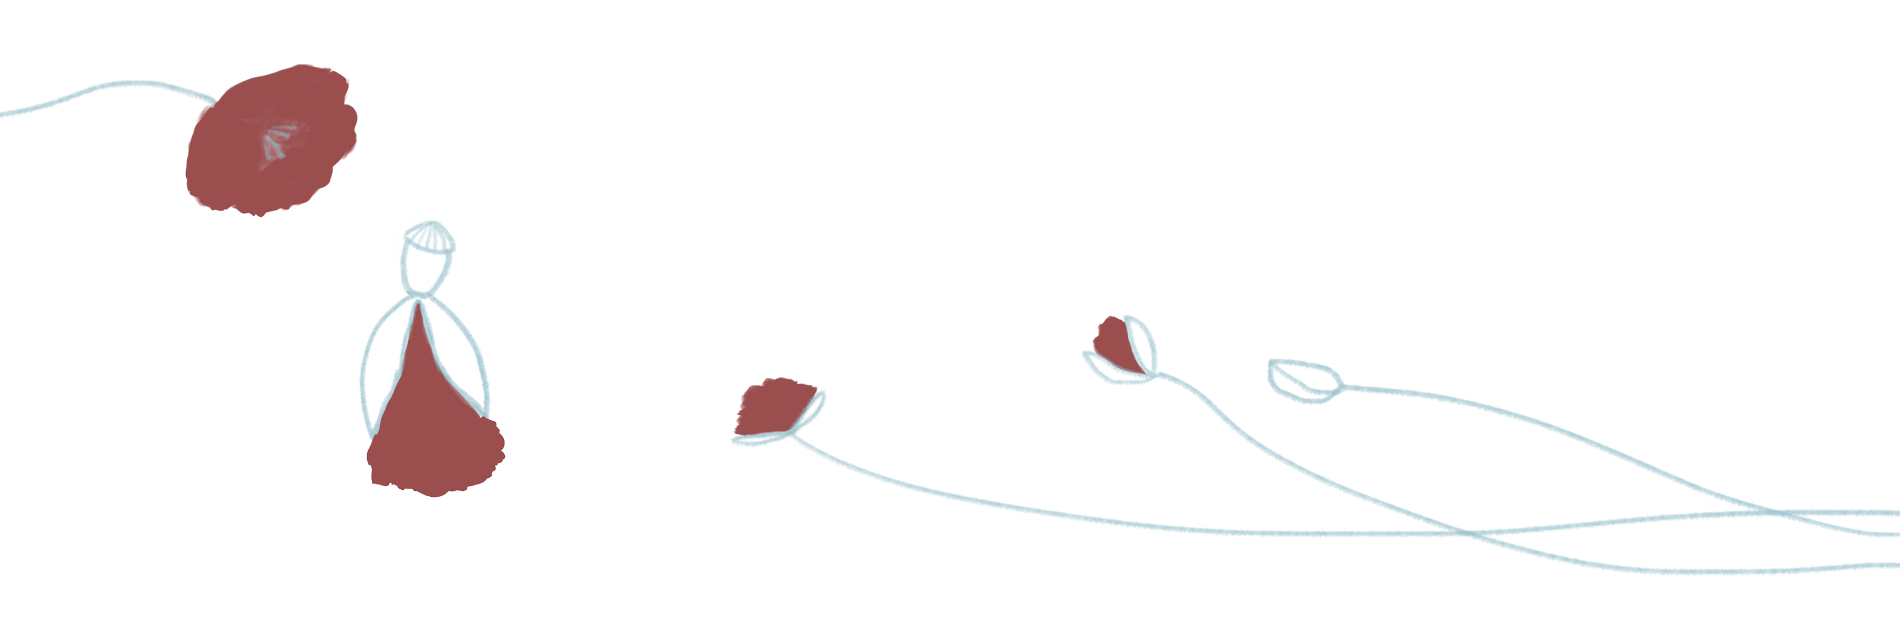 fiore-papavero-eunice